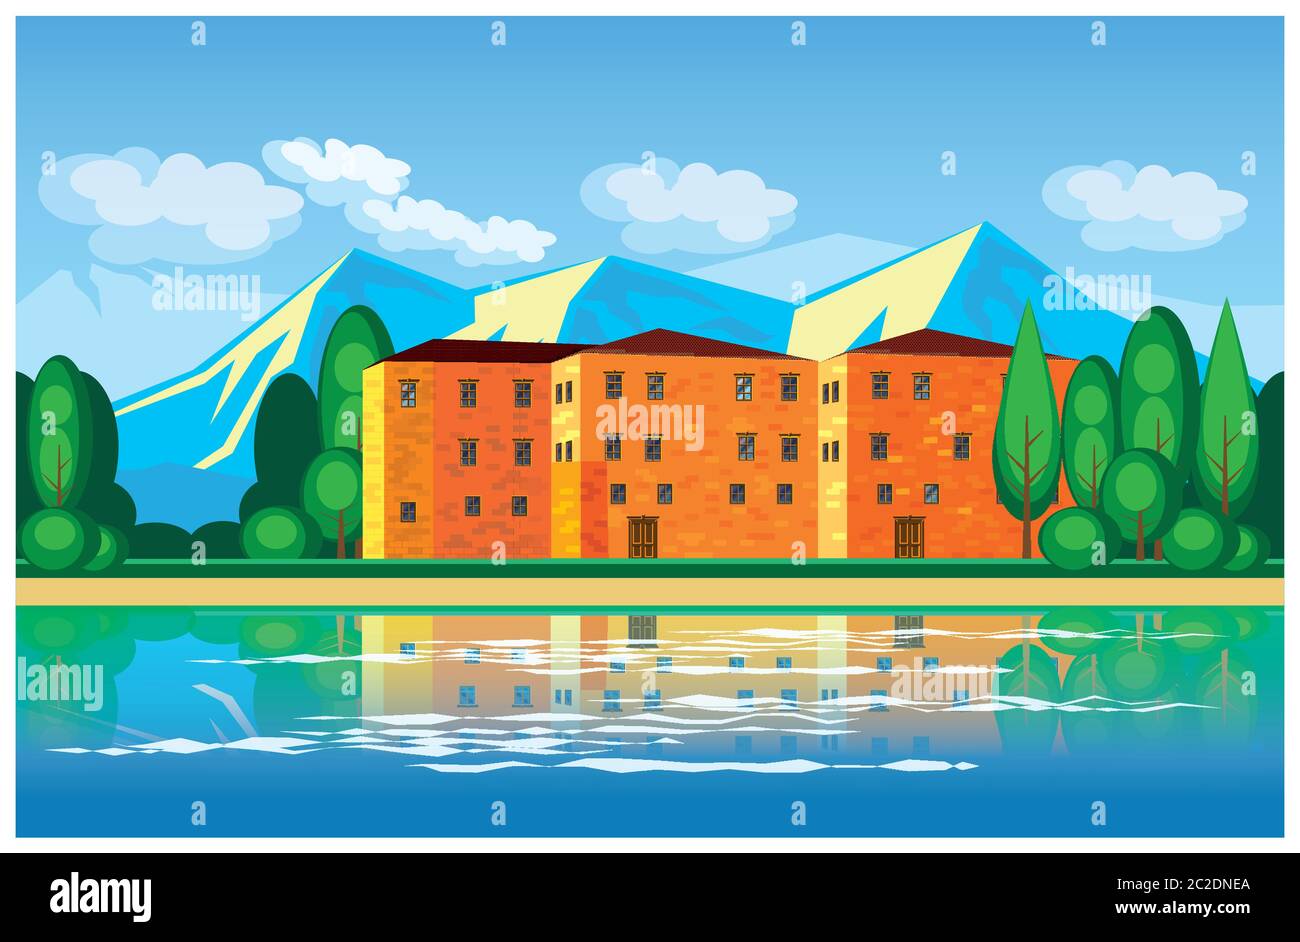 Illustration vectorielle stylisée sur le thème de l'immobilier et des maisons de campagne. Hôtel particulier européen dans les montagnes, sur le front de mer. Illustration se Illustration de Vecteur